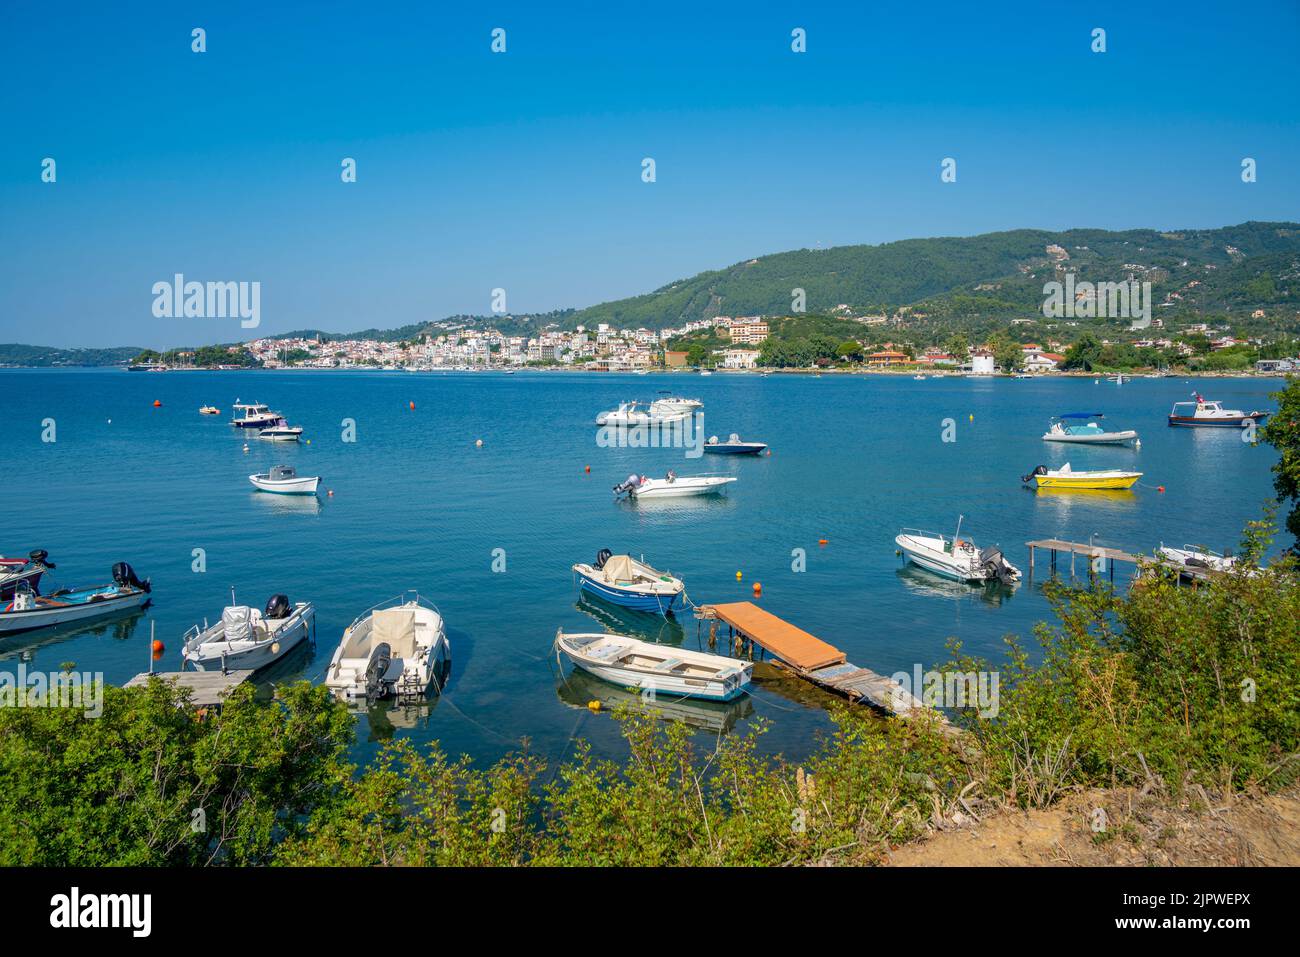 Vue sur les bateaux et la ville de Skiathos, l'île de Skiathos, les îles Sporades, les îles grecques, la Grèce, Europe Banque D'Images